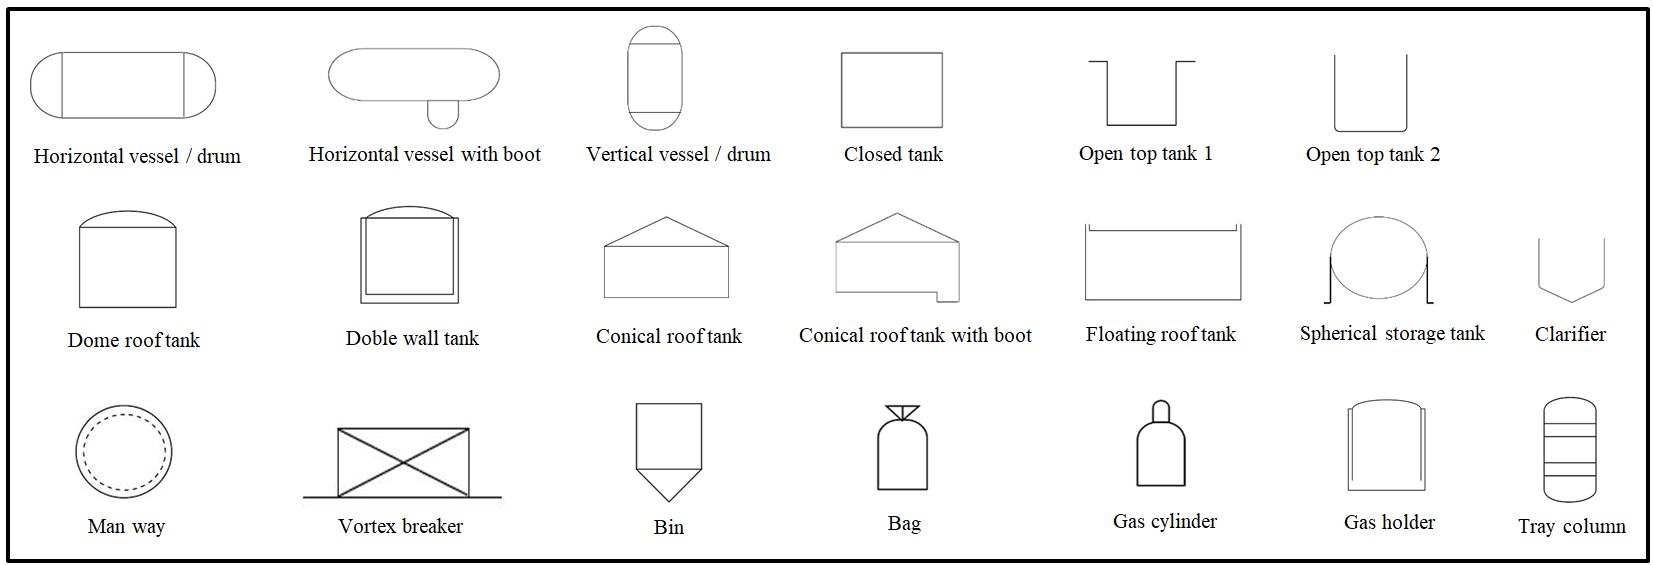 Storage tanks vessels p&id symbols